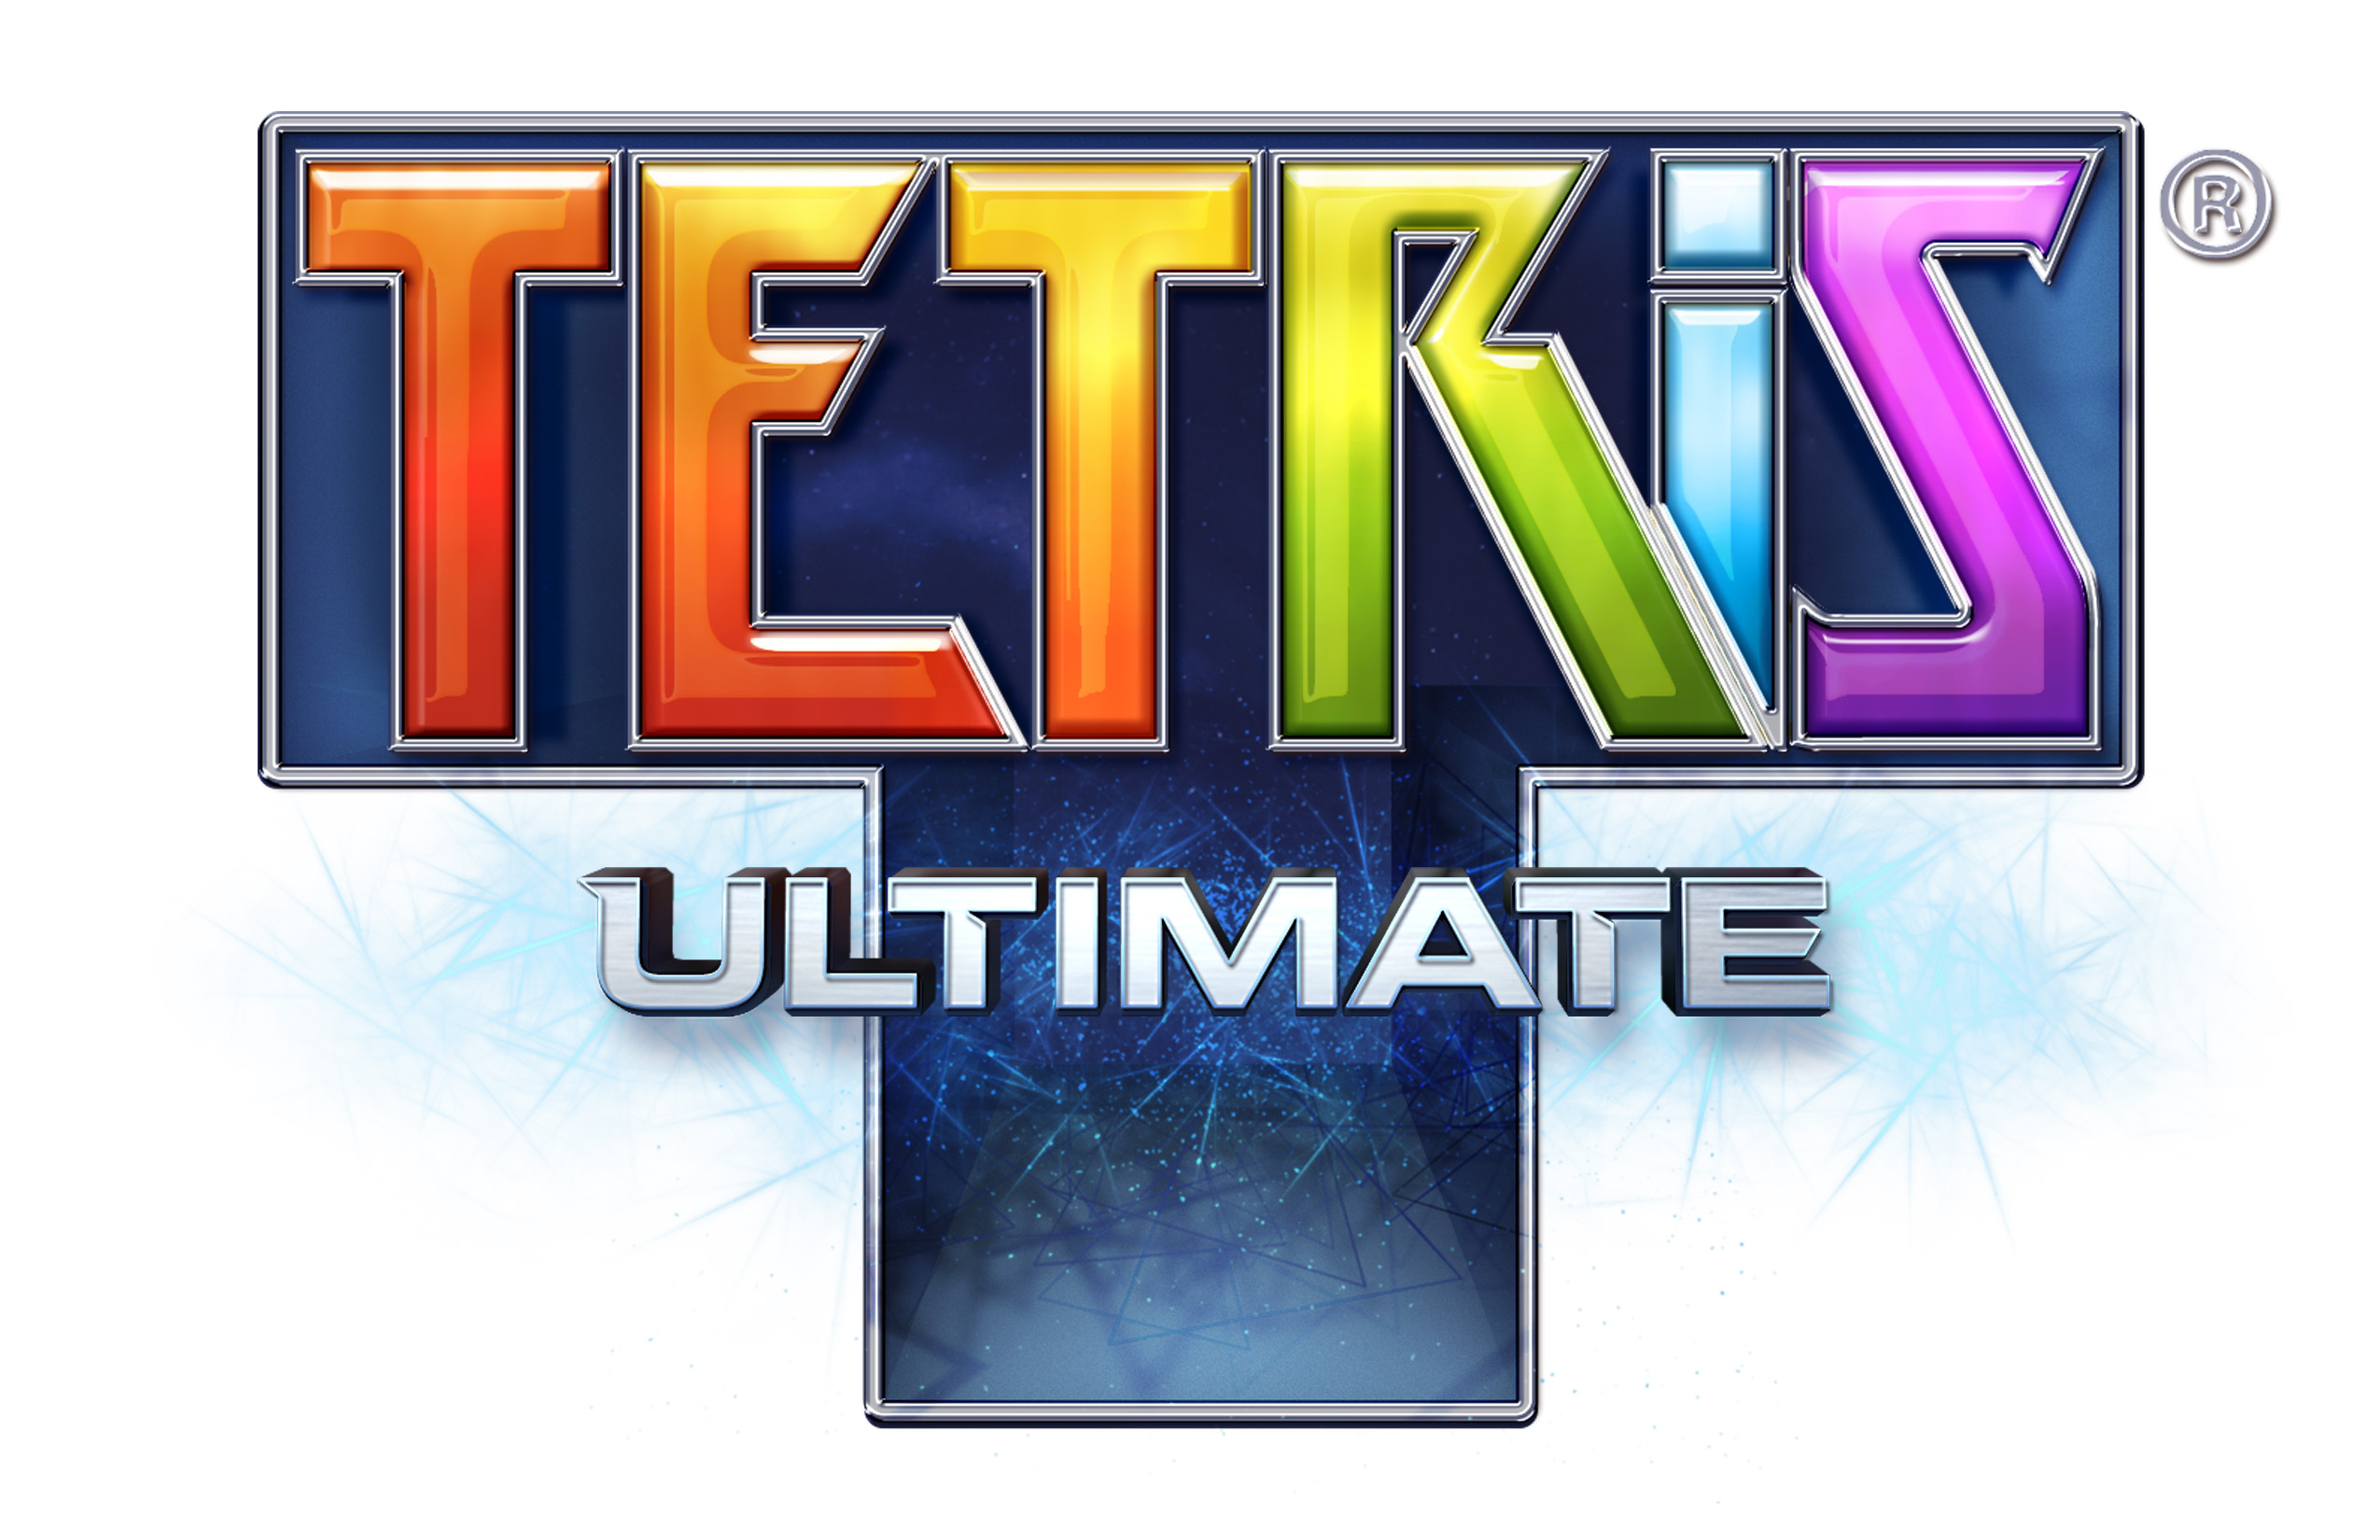 tetris ultimate 3ds